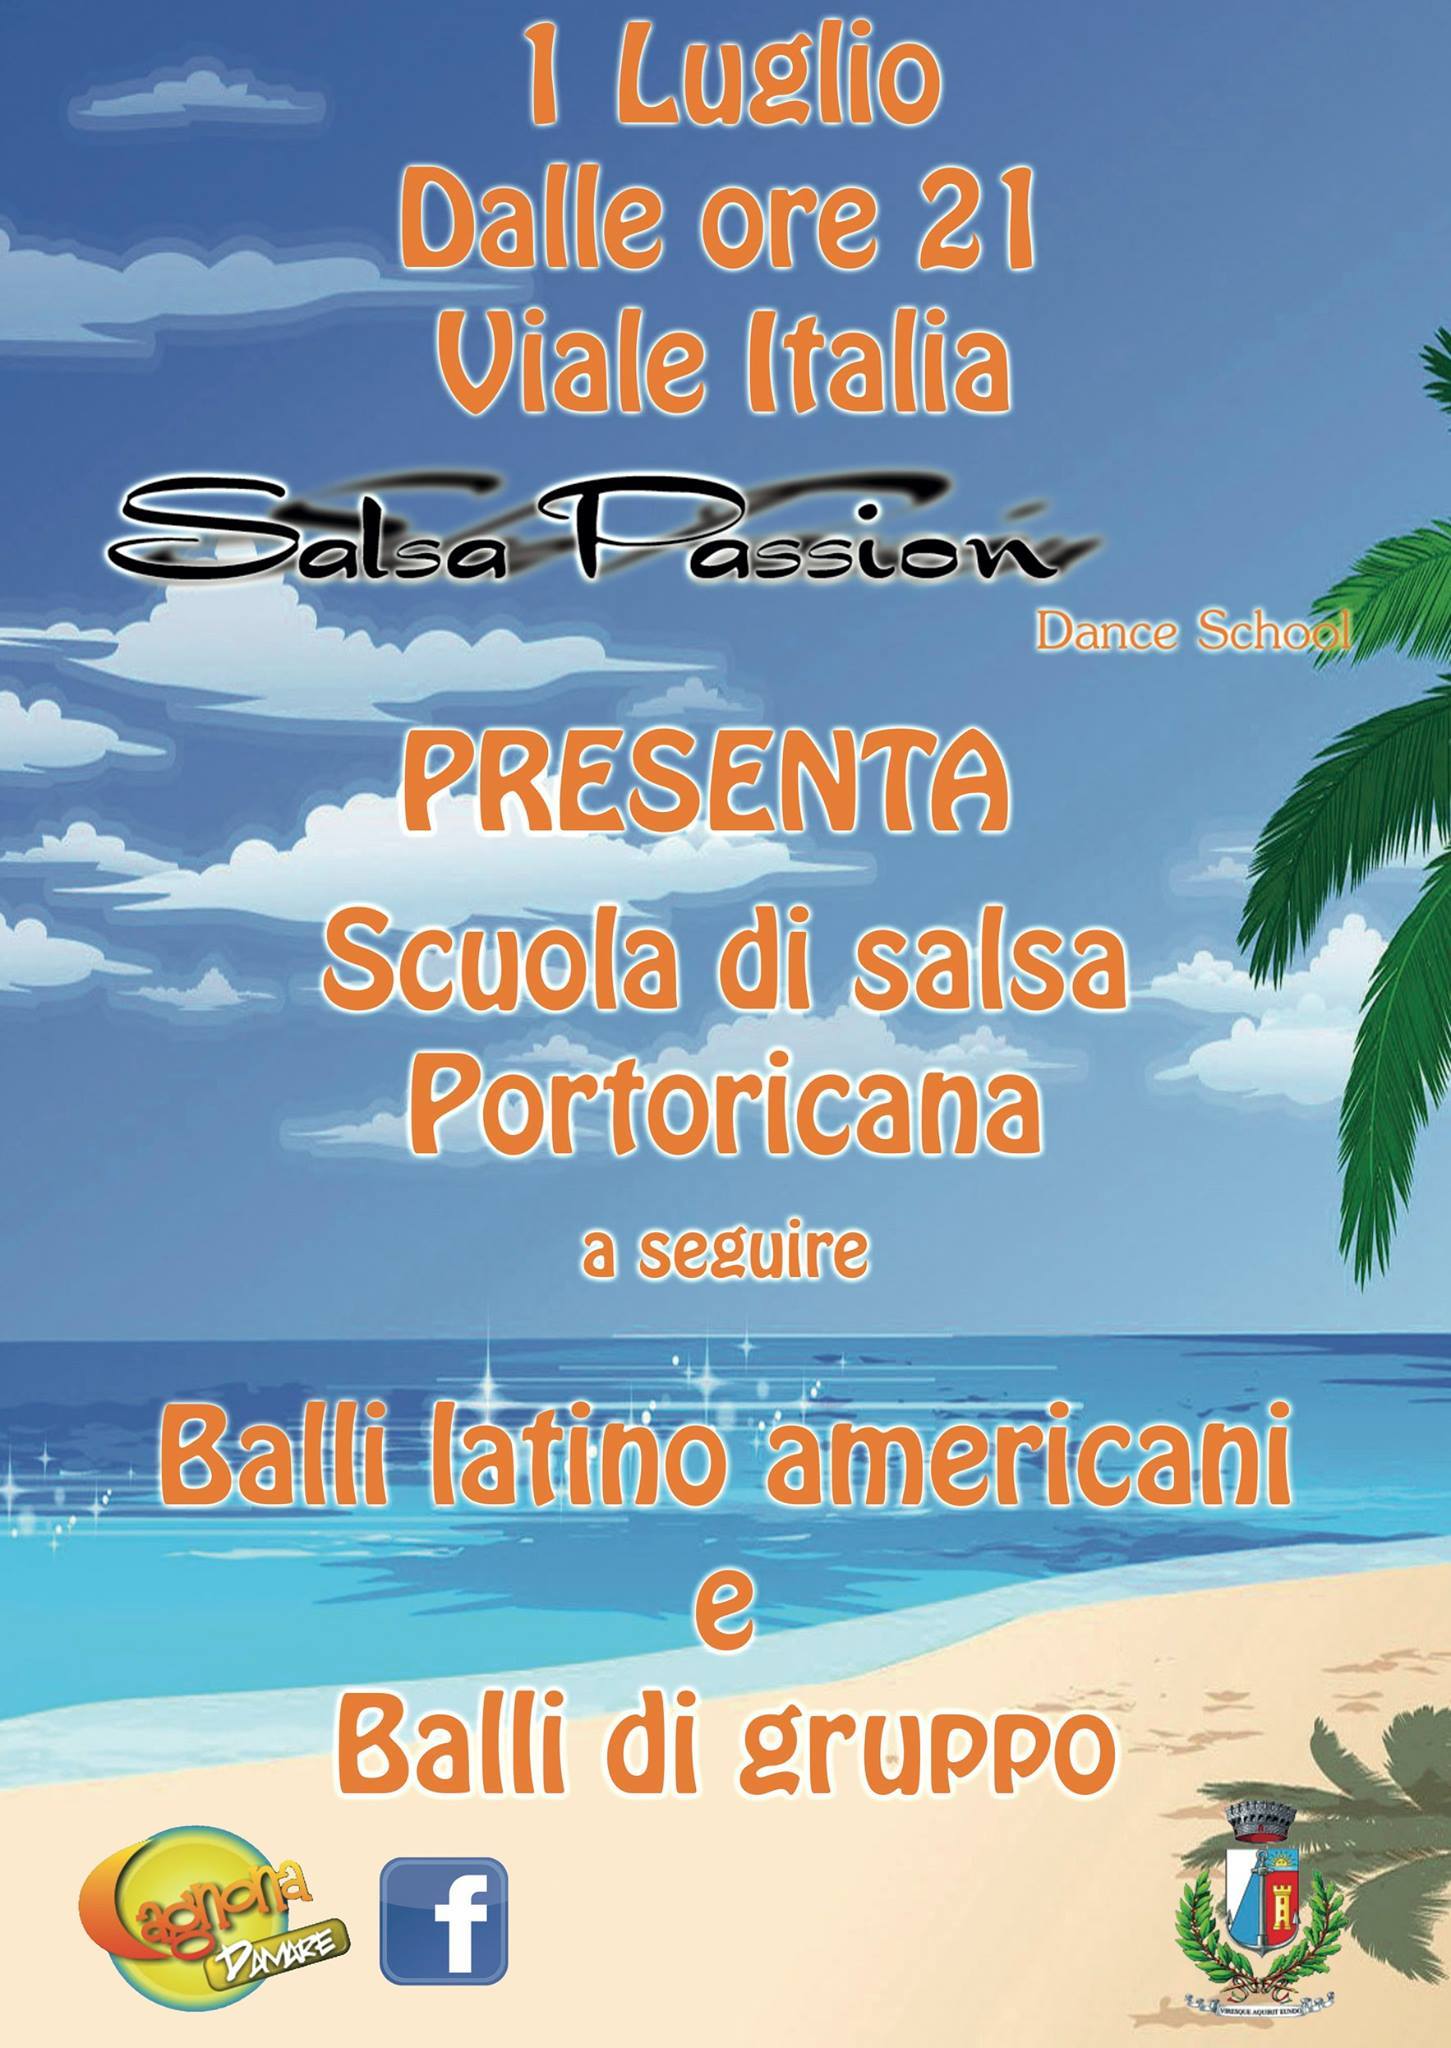 Serata Salsa Passion 01 Luglio 14 Bellaria Igea Marina Vacanze Mare Sport Congressi Eventi